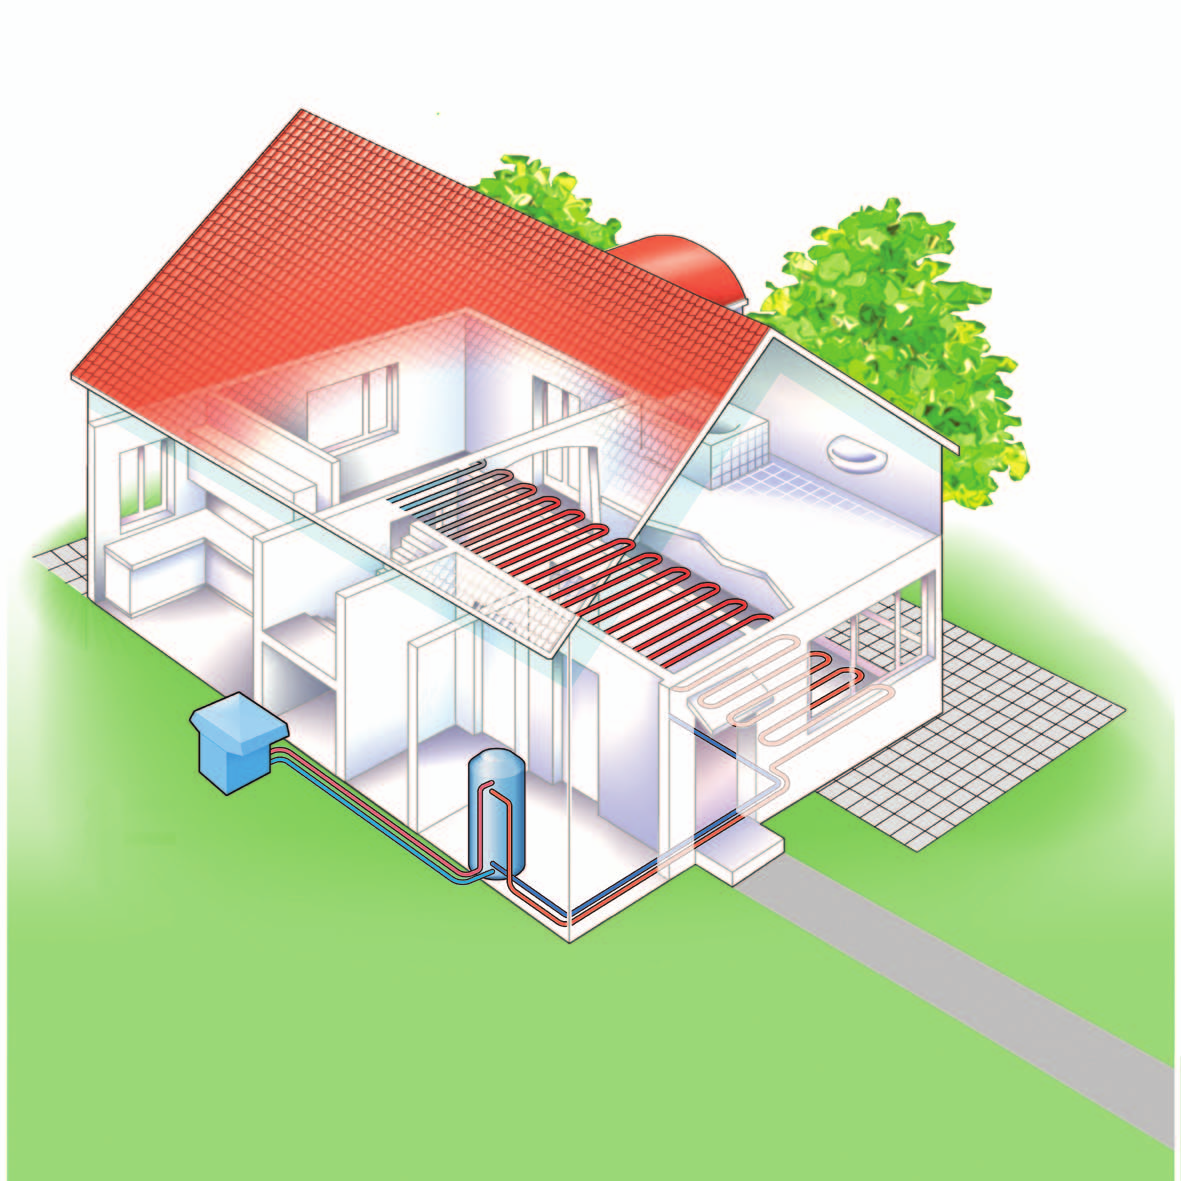 Tepelná čerpadla vzduch/voda Venkovní provedení U venkovního provedení je nutno dbát na následující: co nejmenší vzdálenost mezi tepelným čerpadlem a budovou (omezení tepelných ztrát) zohlednění